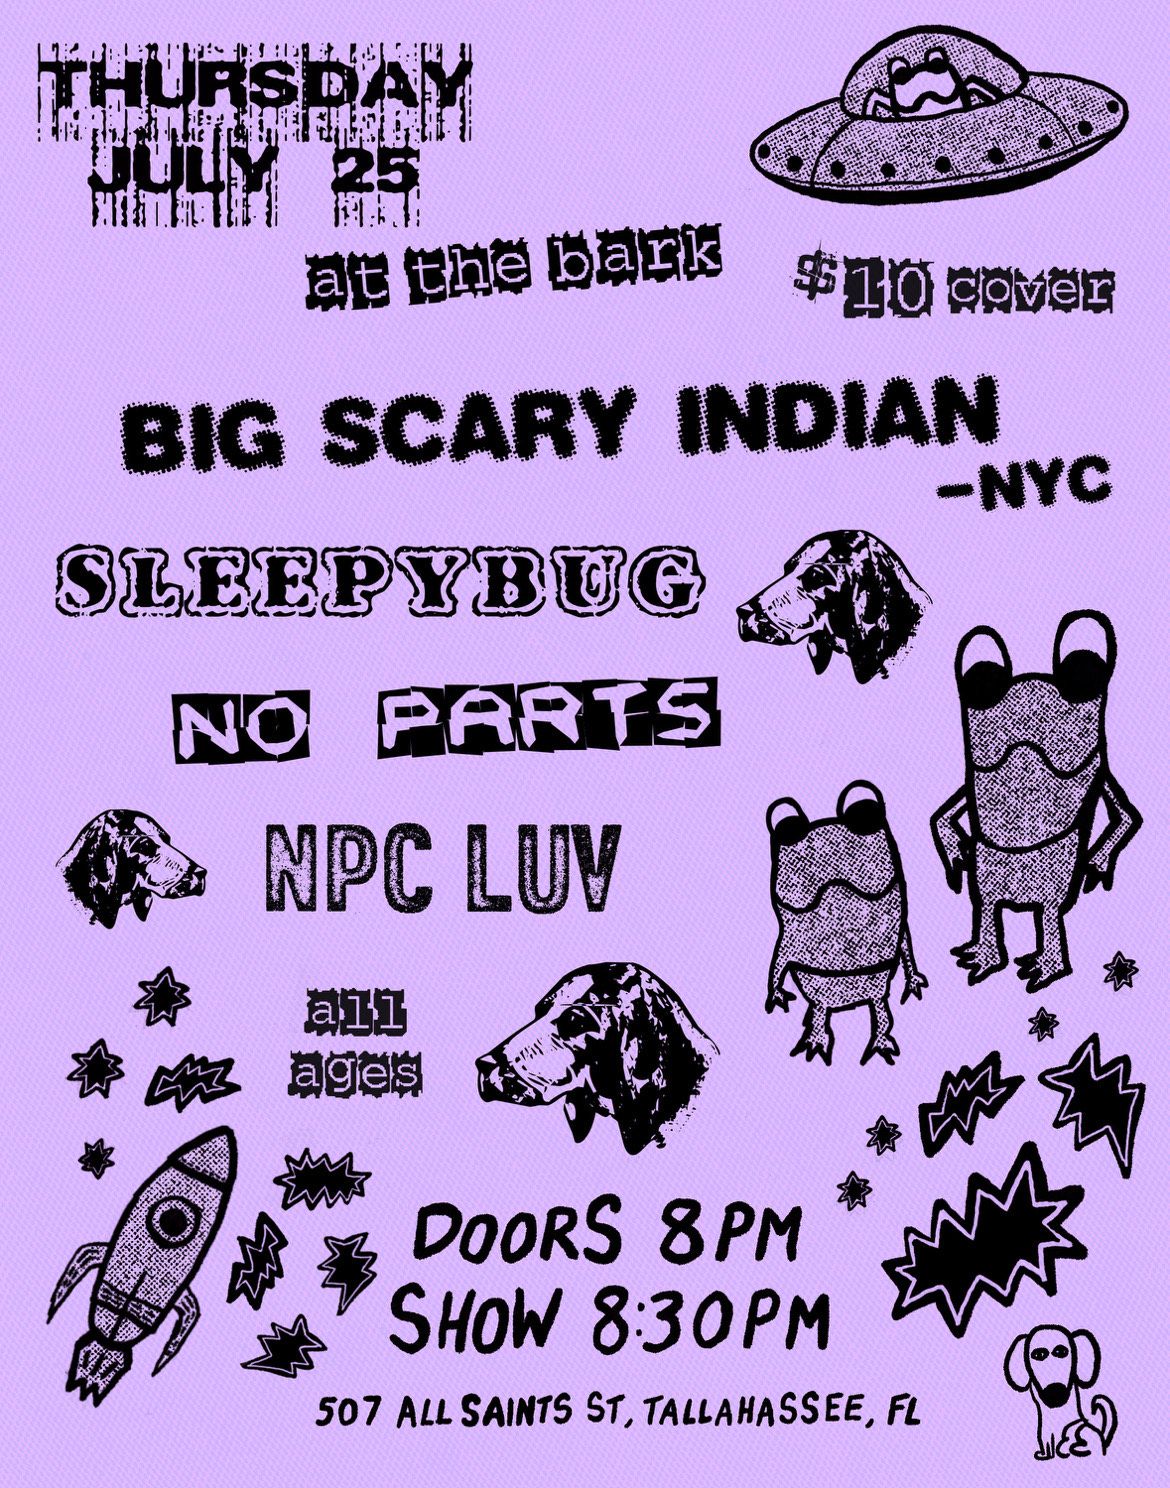 Big Scary Indian (NYC) w\/ No Parts, Sleepybug, npc luv at The Bark - Thur July 25